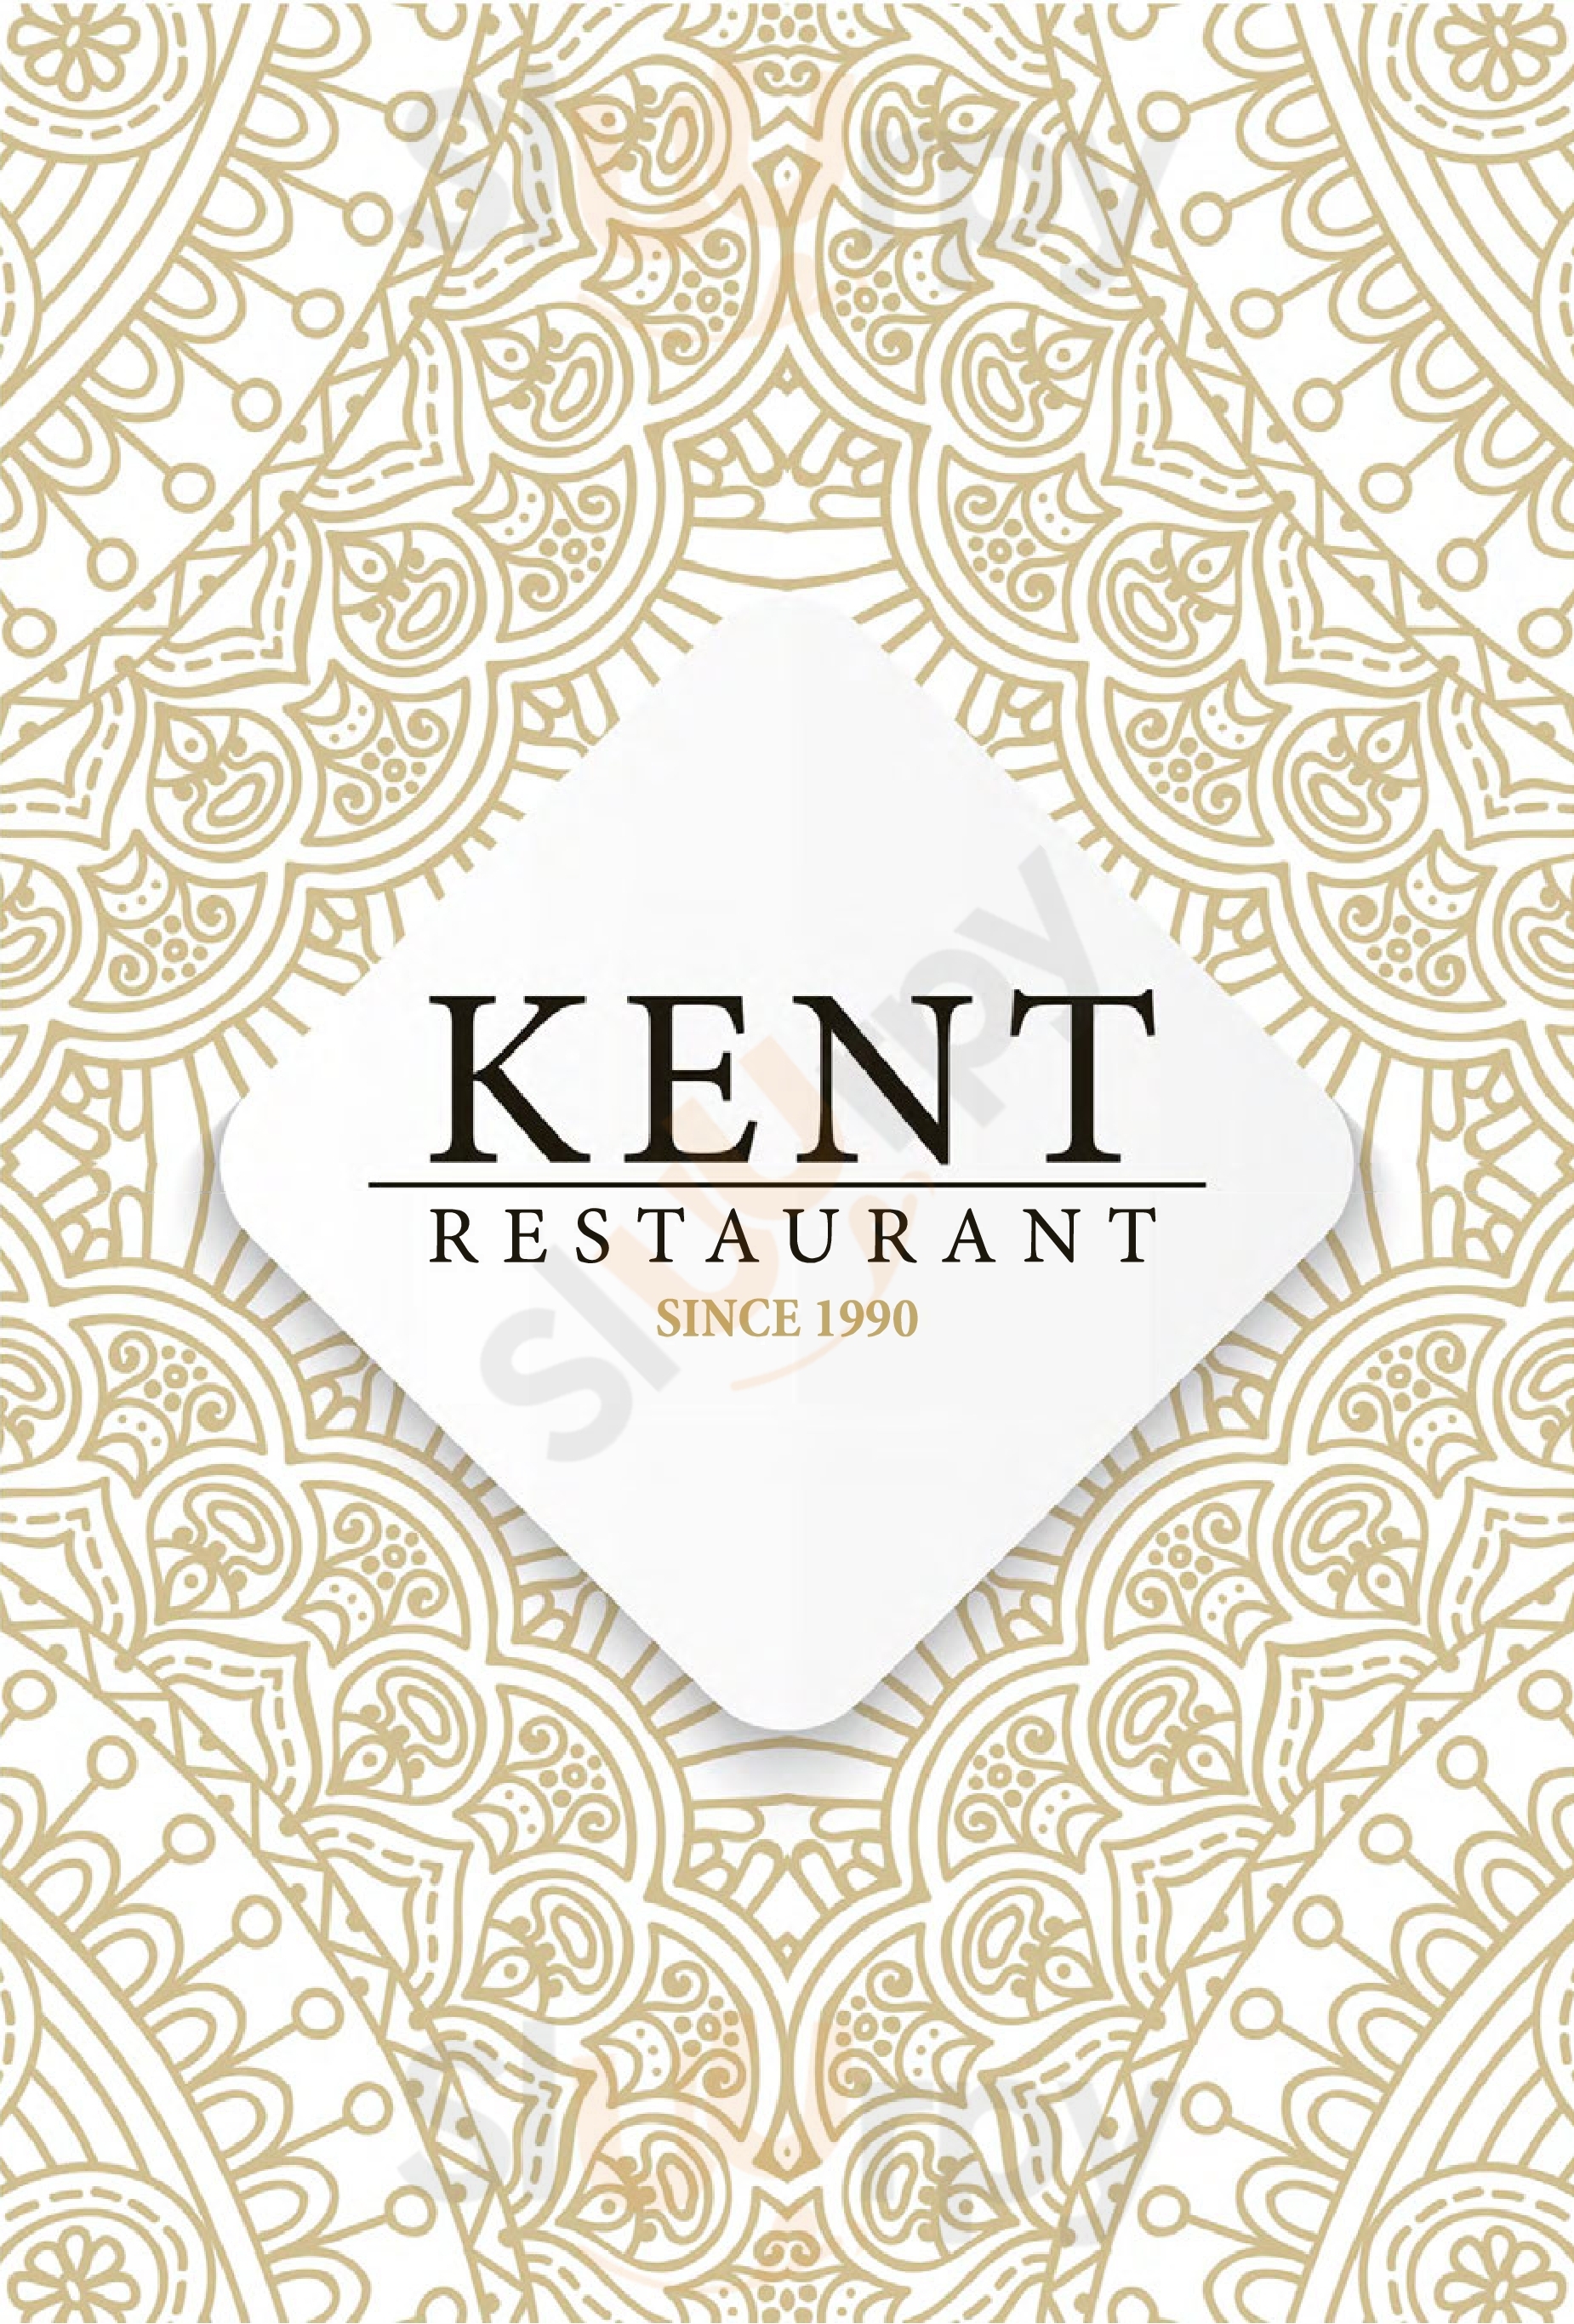 Kent Restaurant Penzing Wien Menu - 1